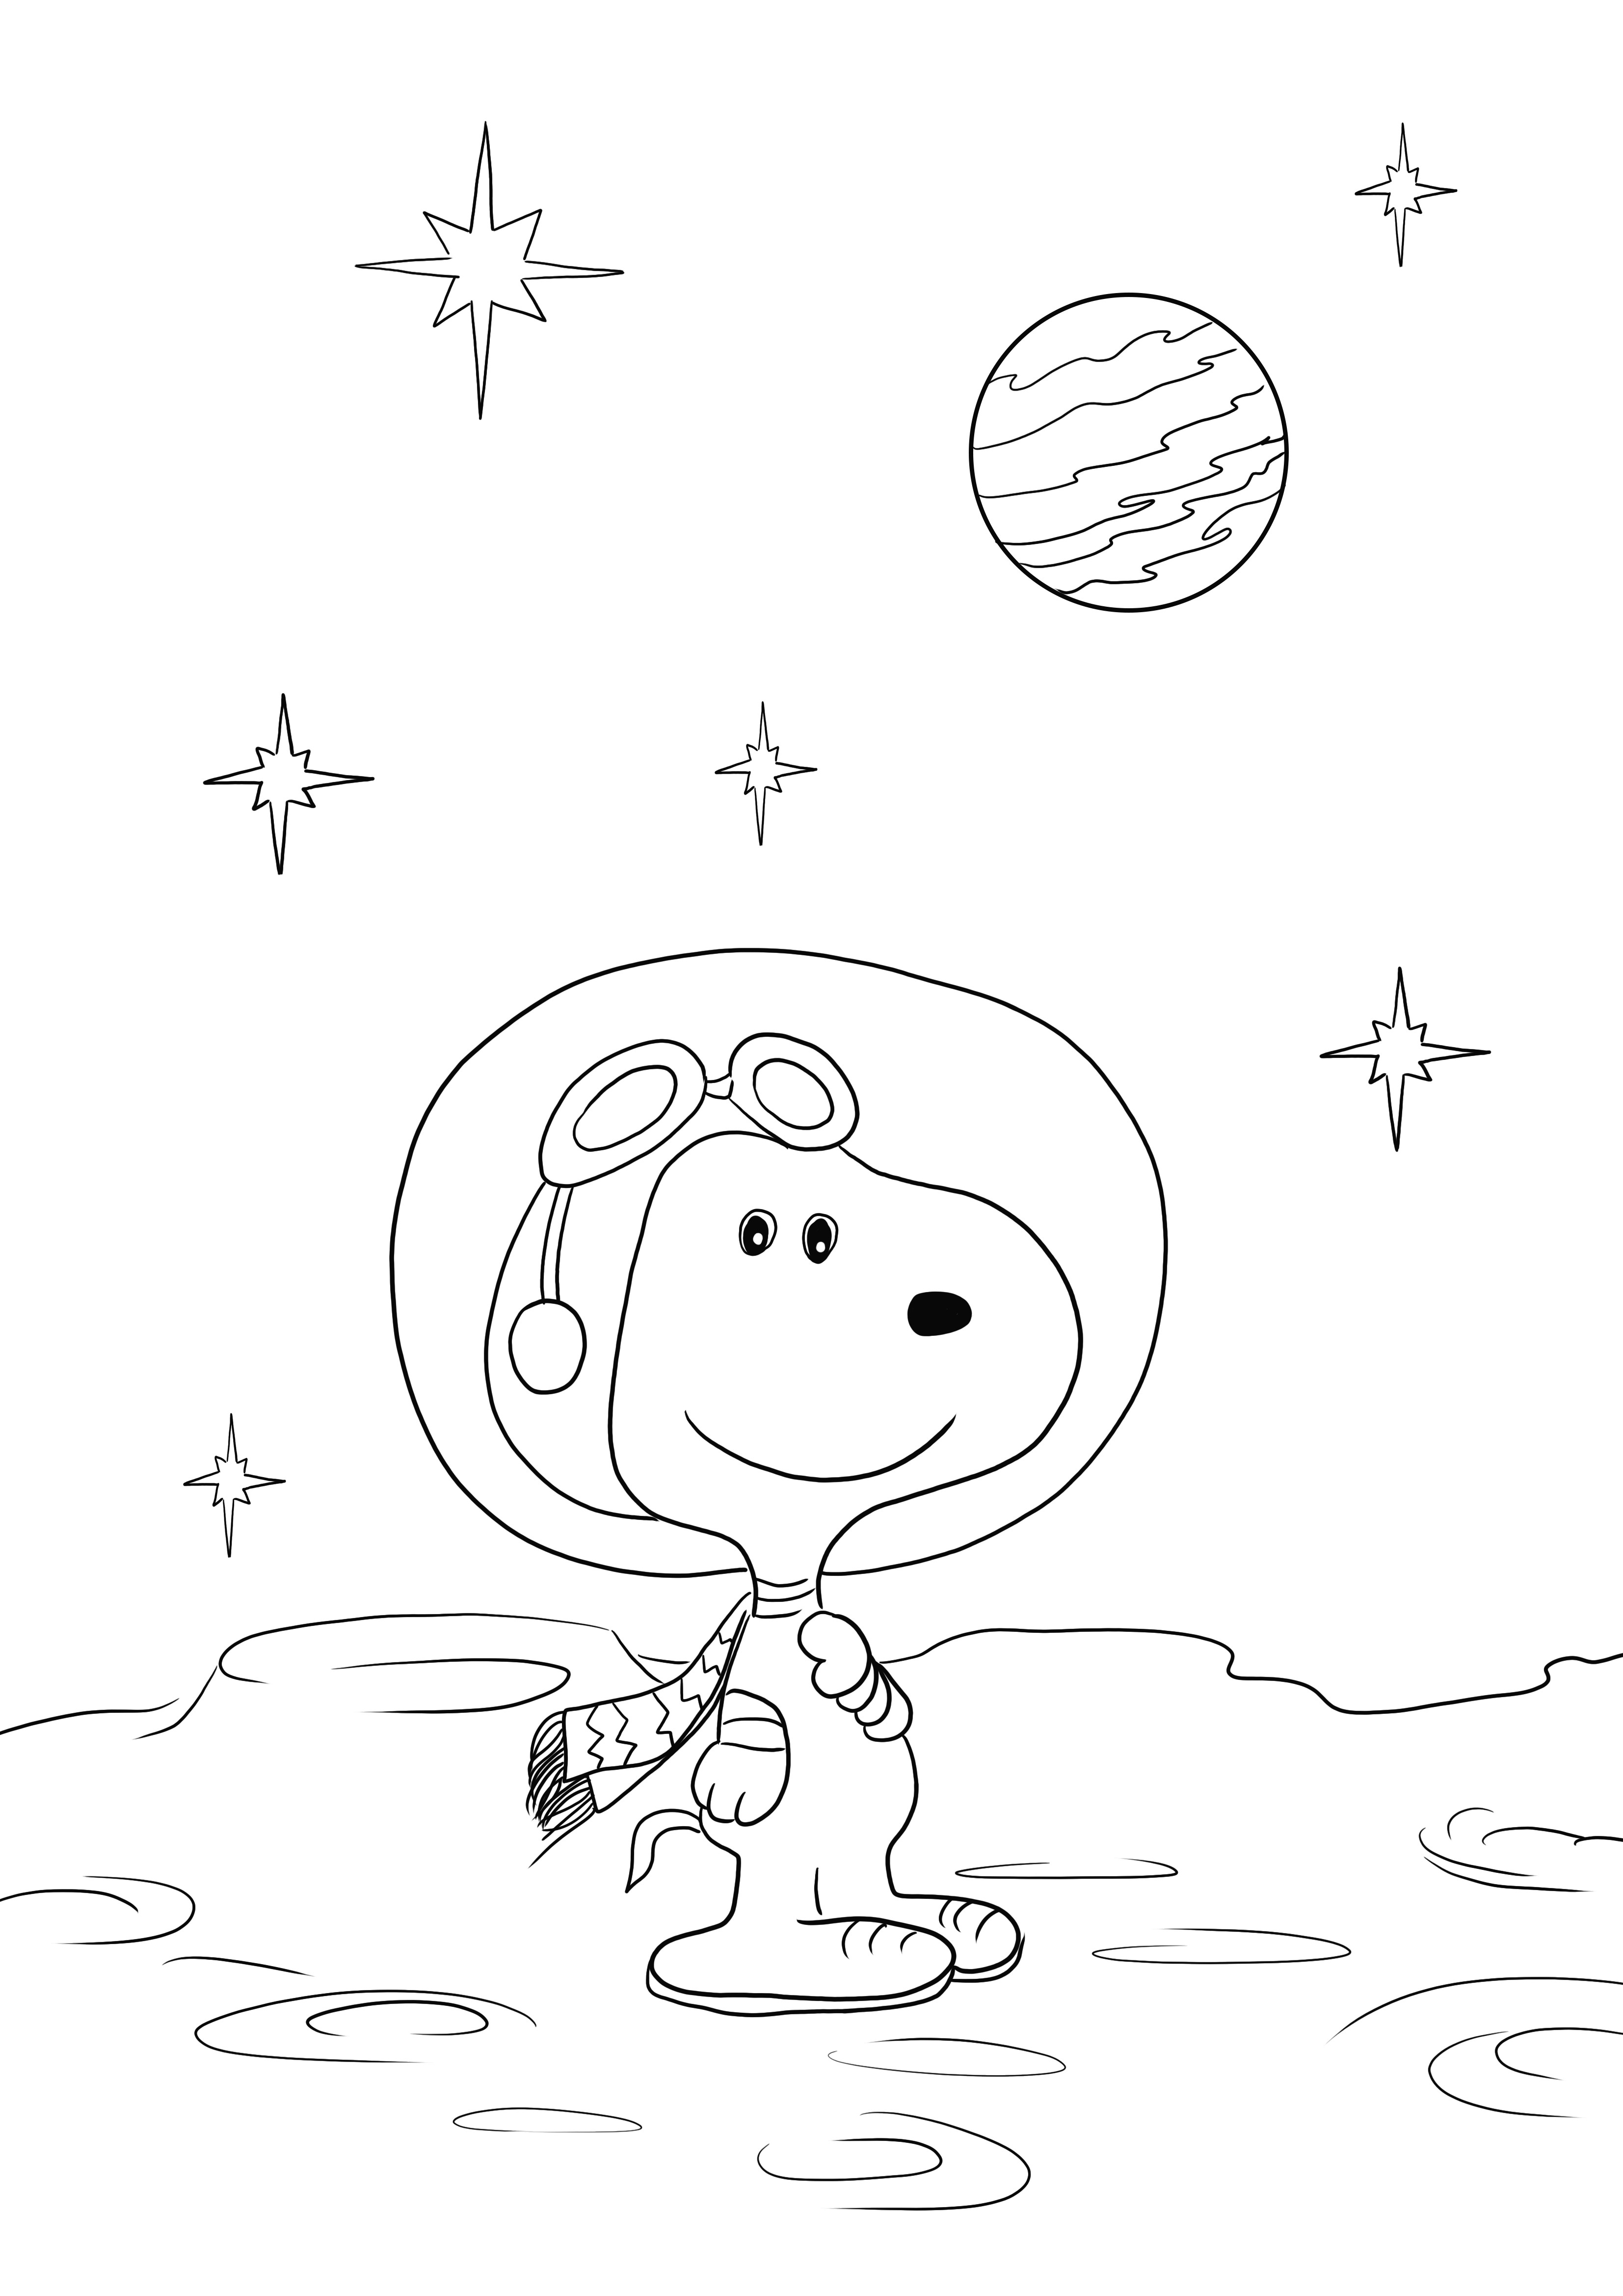 Oto nasz darmowy arkusz Snoopy w kosmosie do pobrania lub wydrukowania i pokolorowania